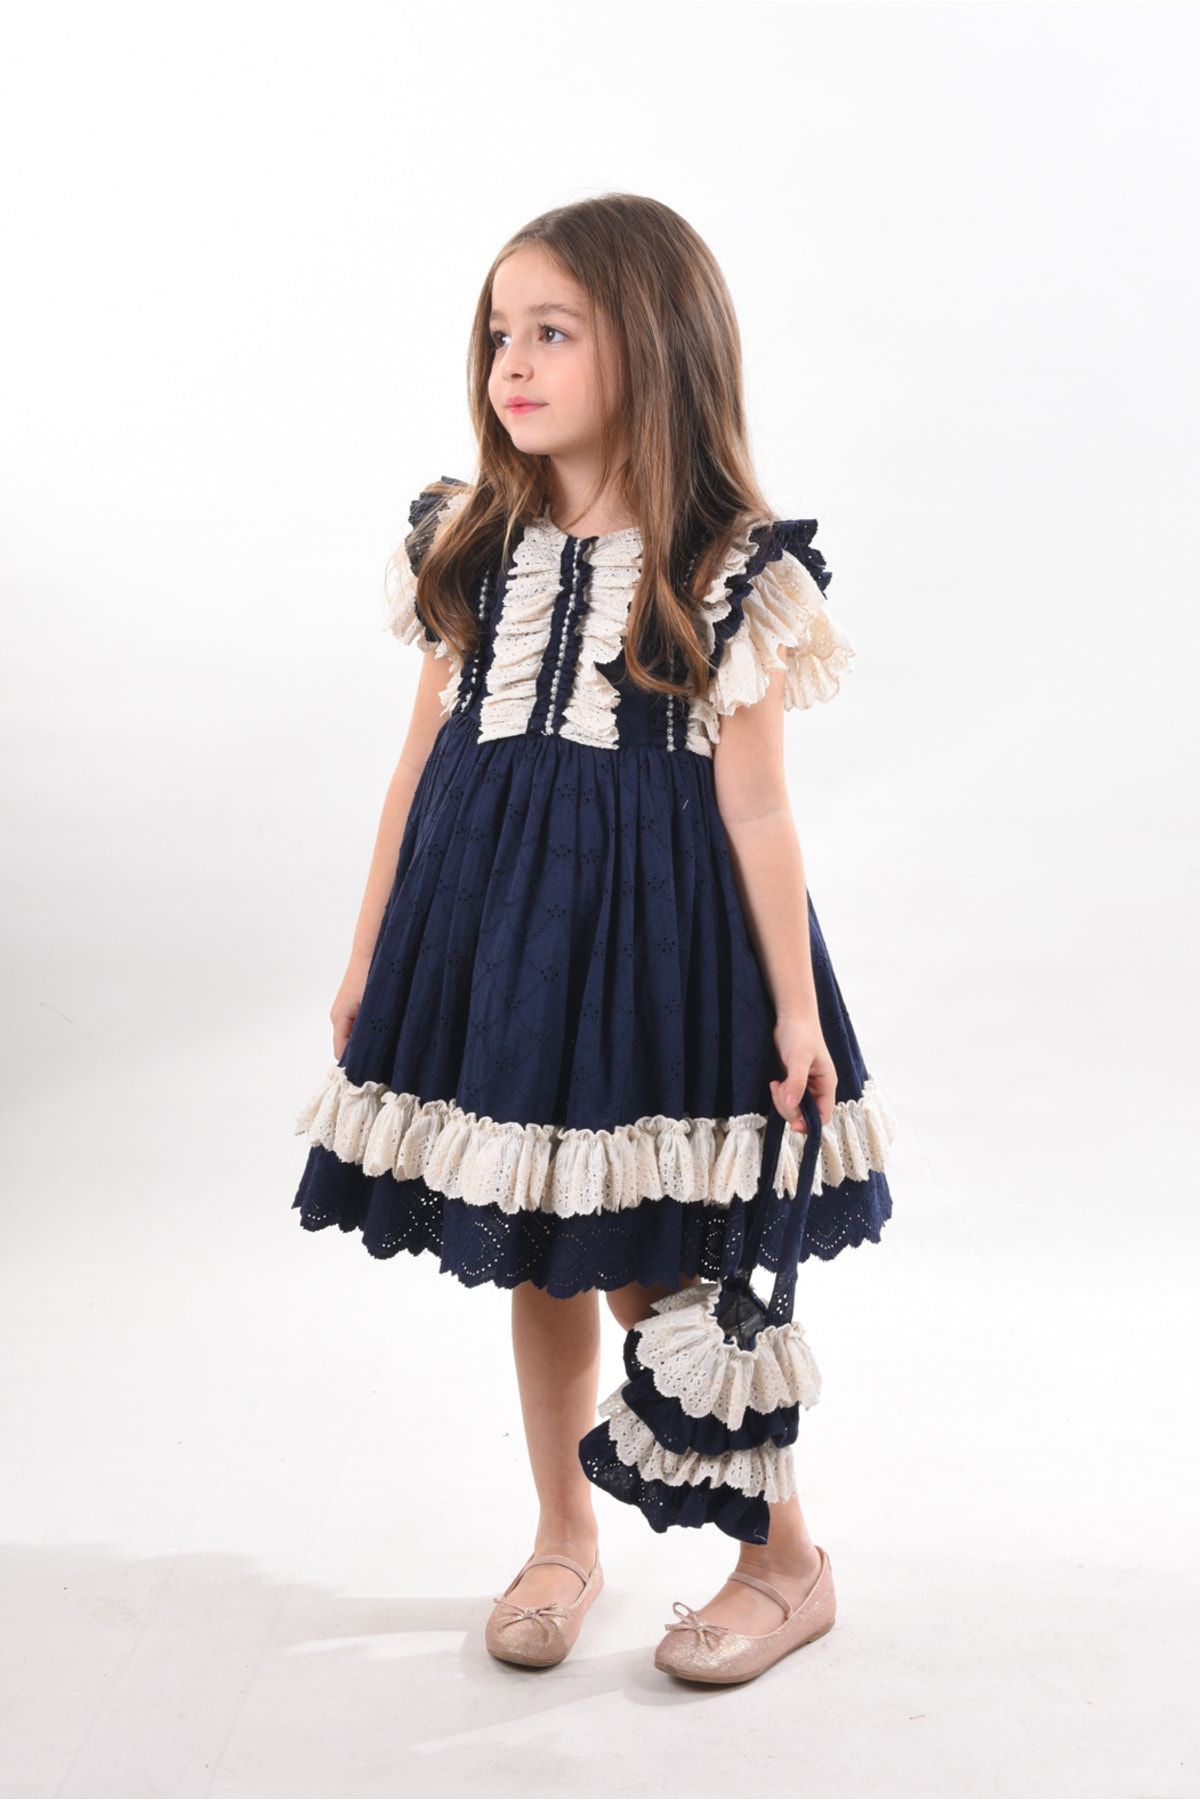 MIALORA EXCLUSİVE By Emel Ebru Özdemir Özel Tasarım Kız Çocuk Kısa Elbise, Vintage Kız Çocuk Elbise, Çanta Aksesuarlı Abiye Elbise